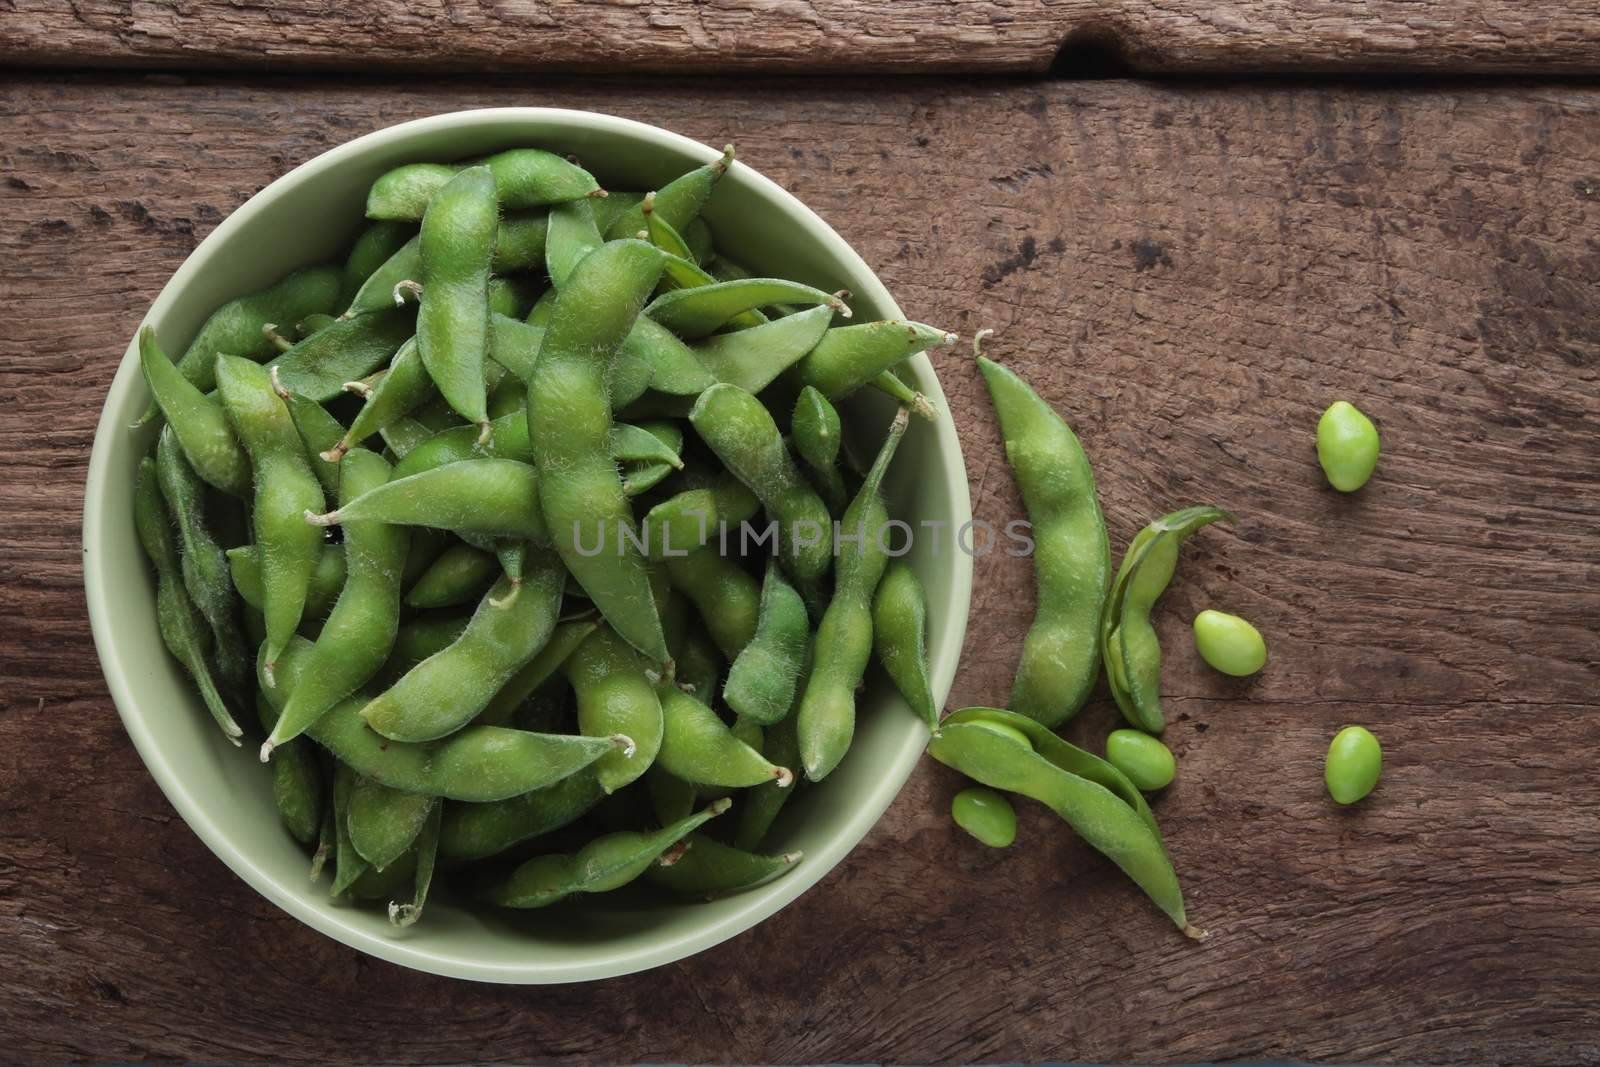 soya beans by neil_langan